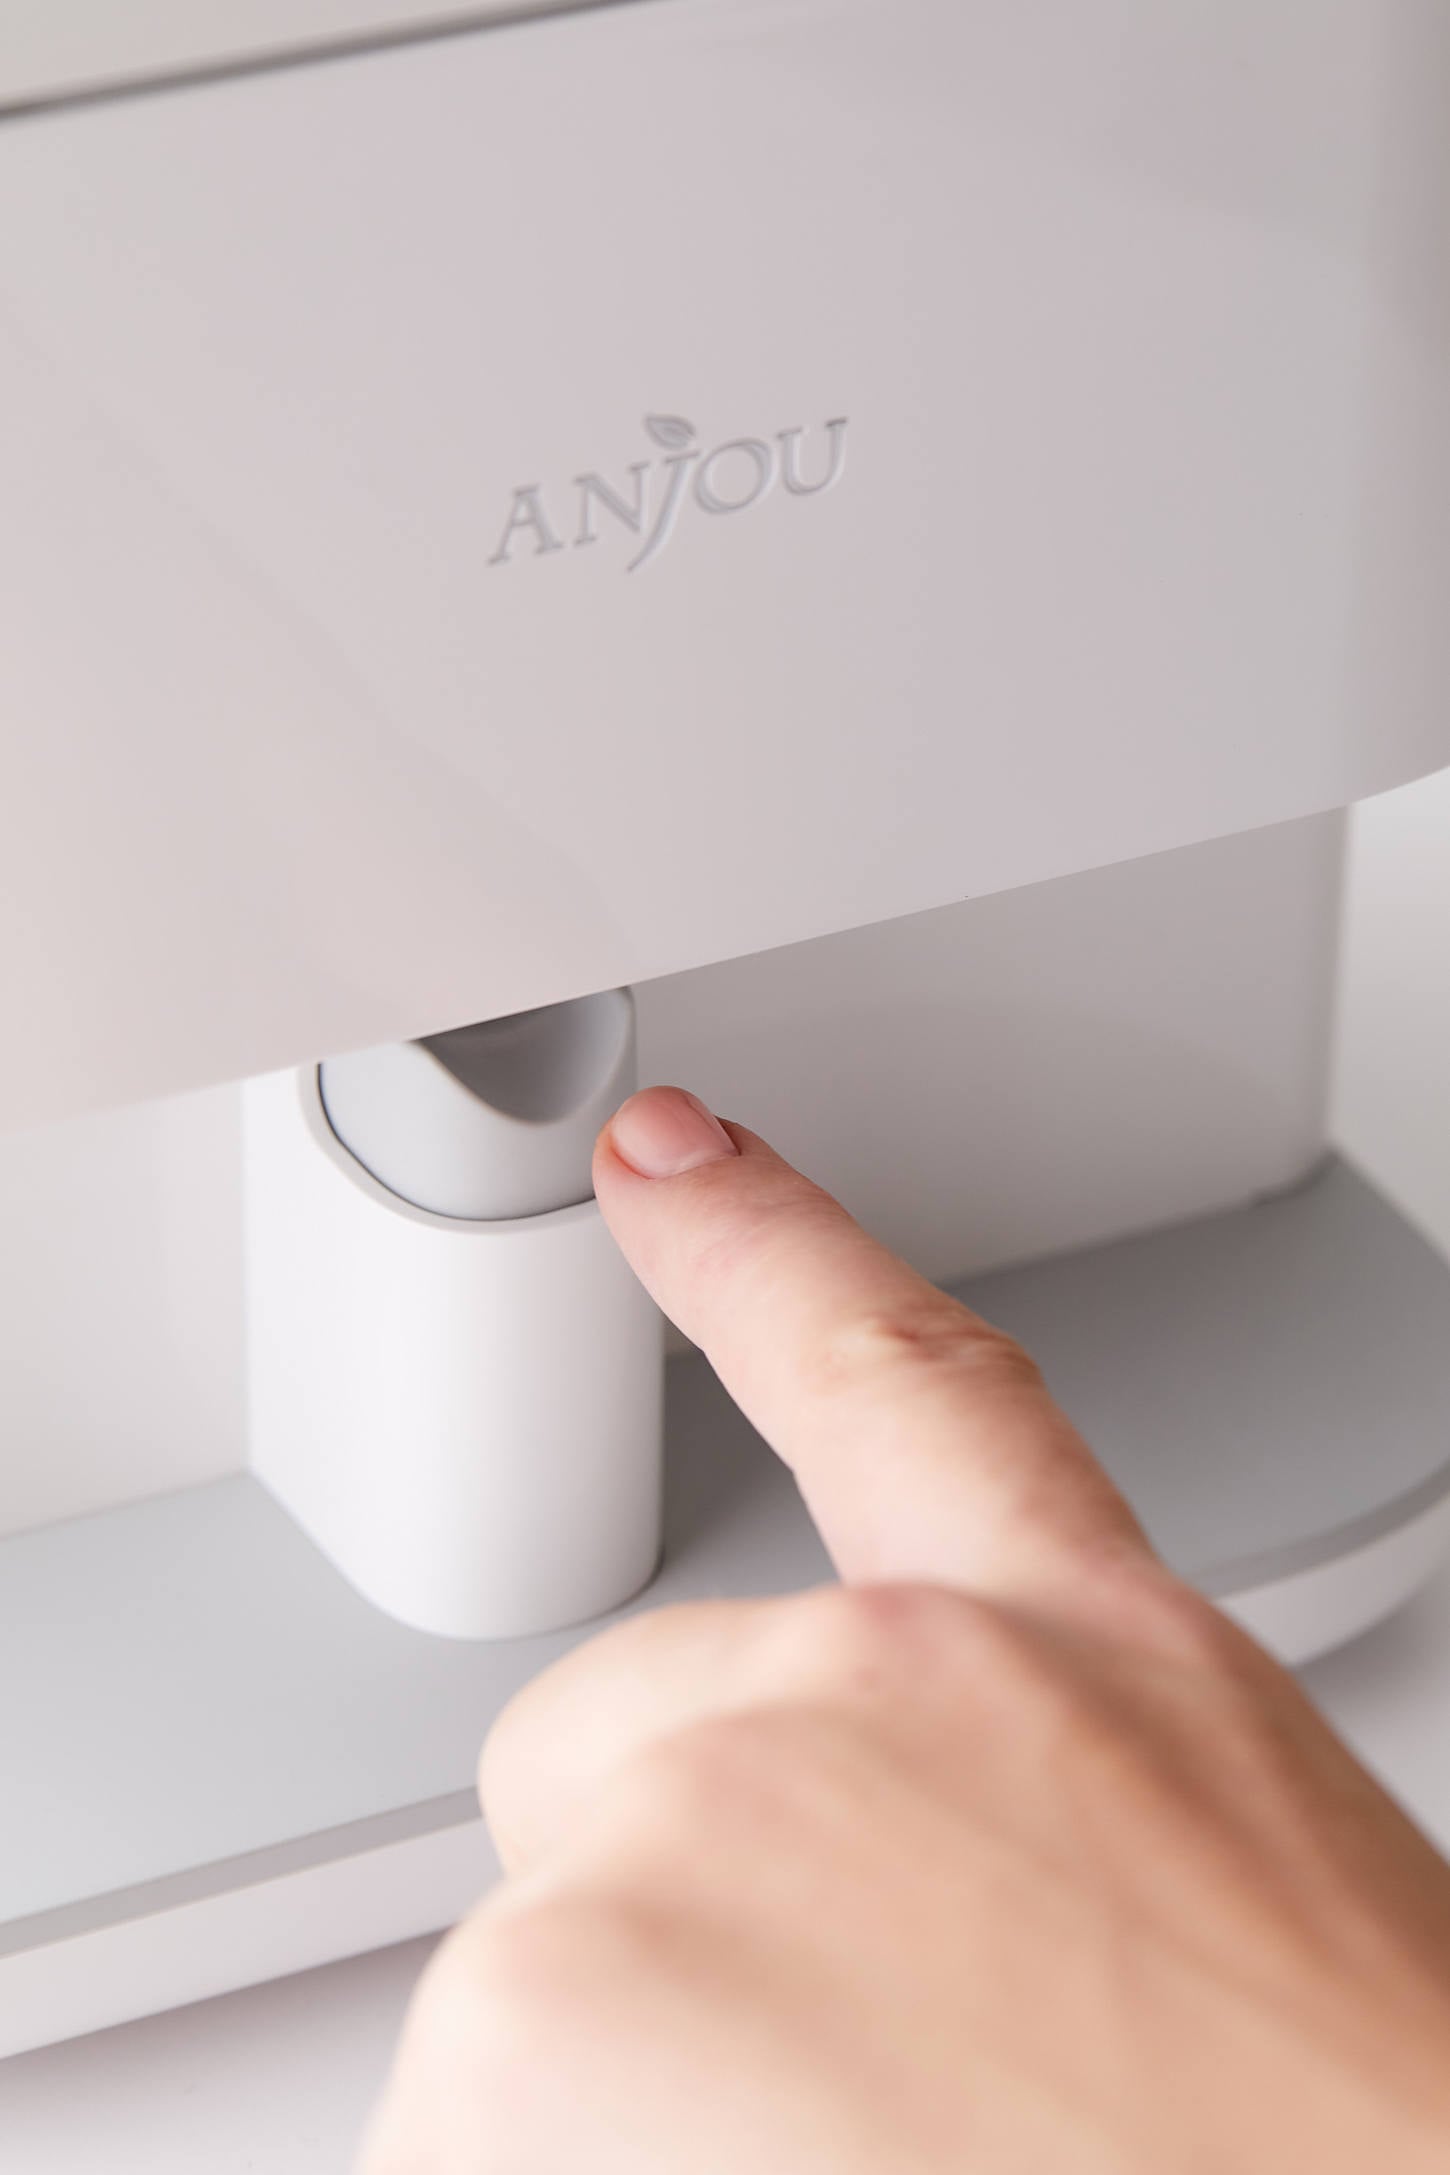 The Anjou Nail Printer Will Let You Screen Print Nail Art